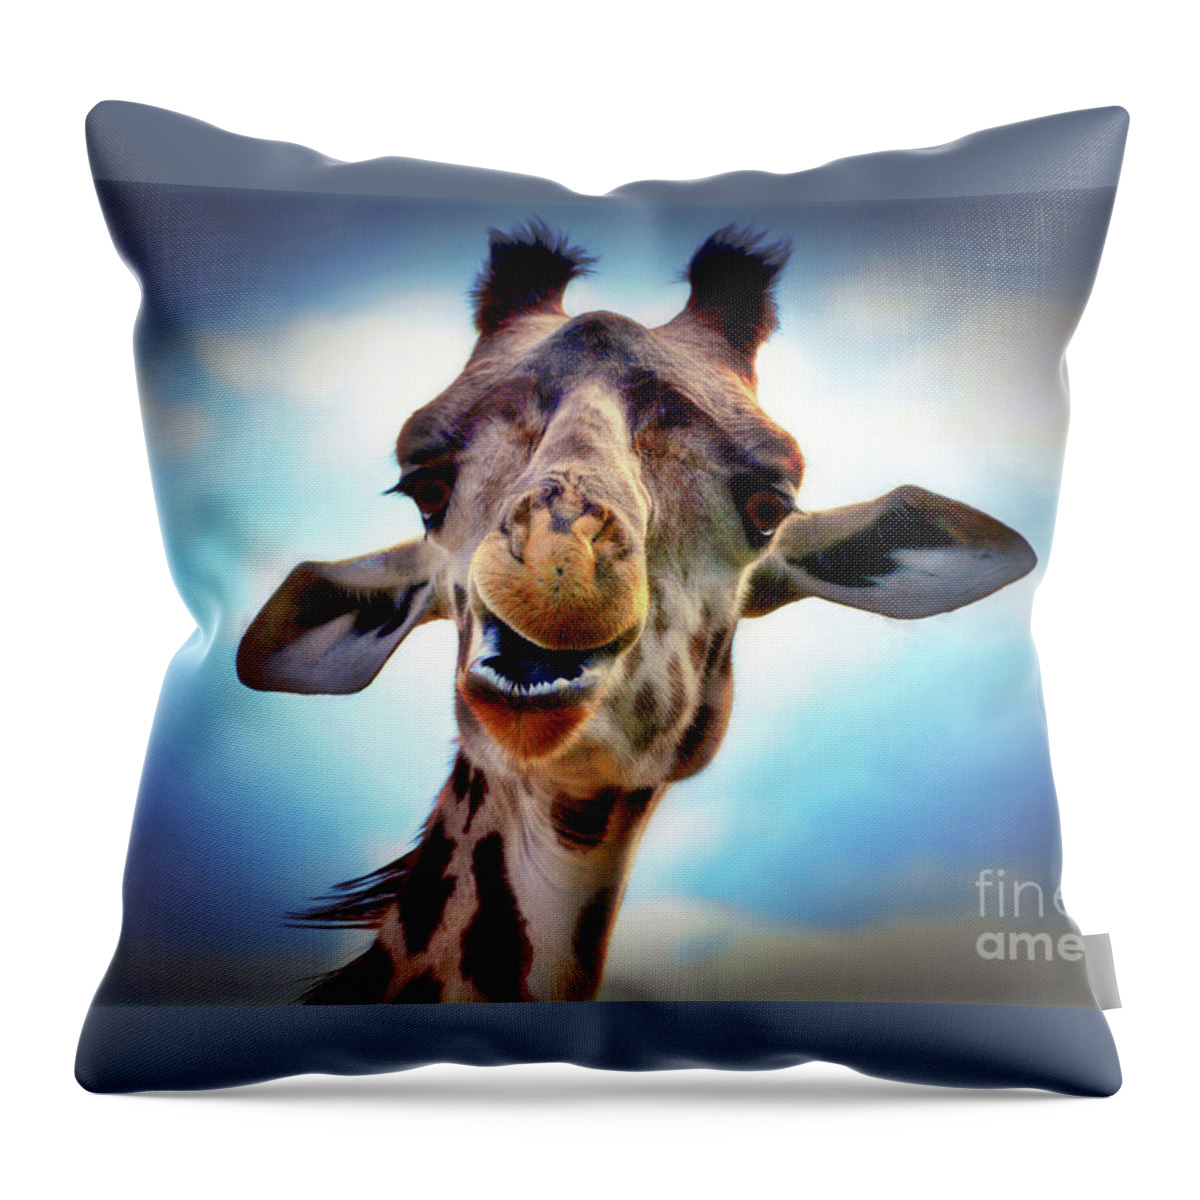 Giraffe Throw Pillow featuring the digital art Giraffe #3 by Savannah Gibbs